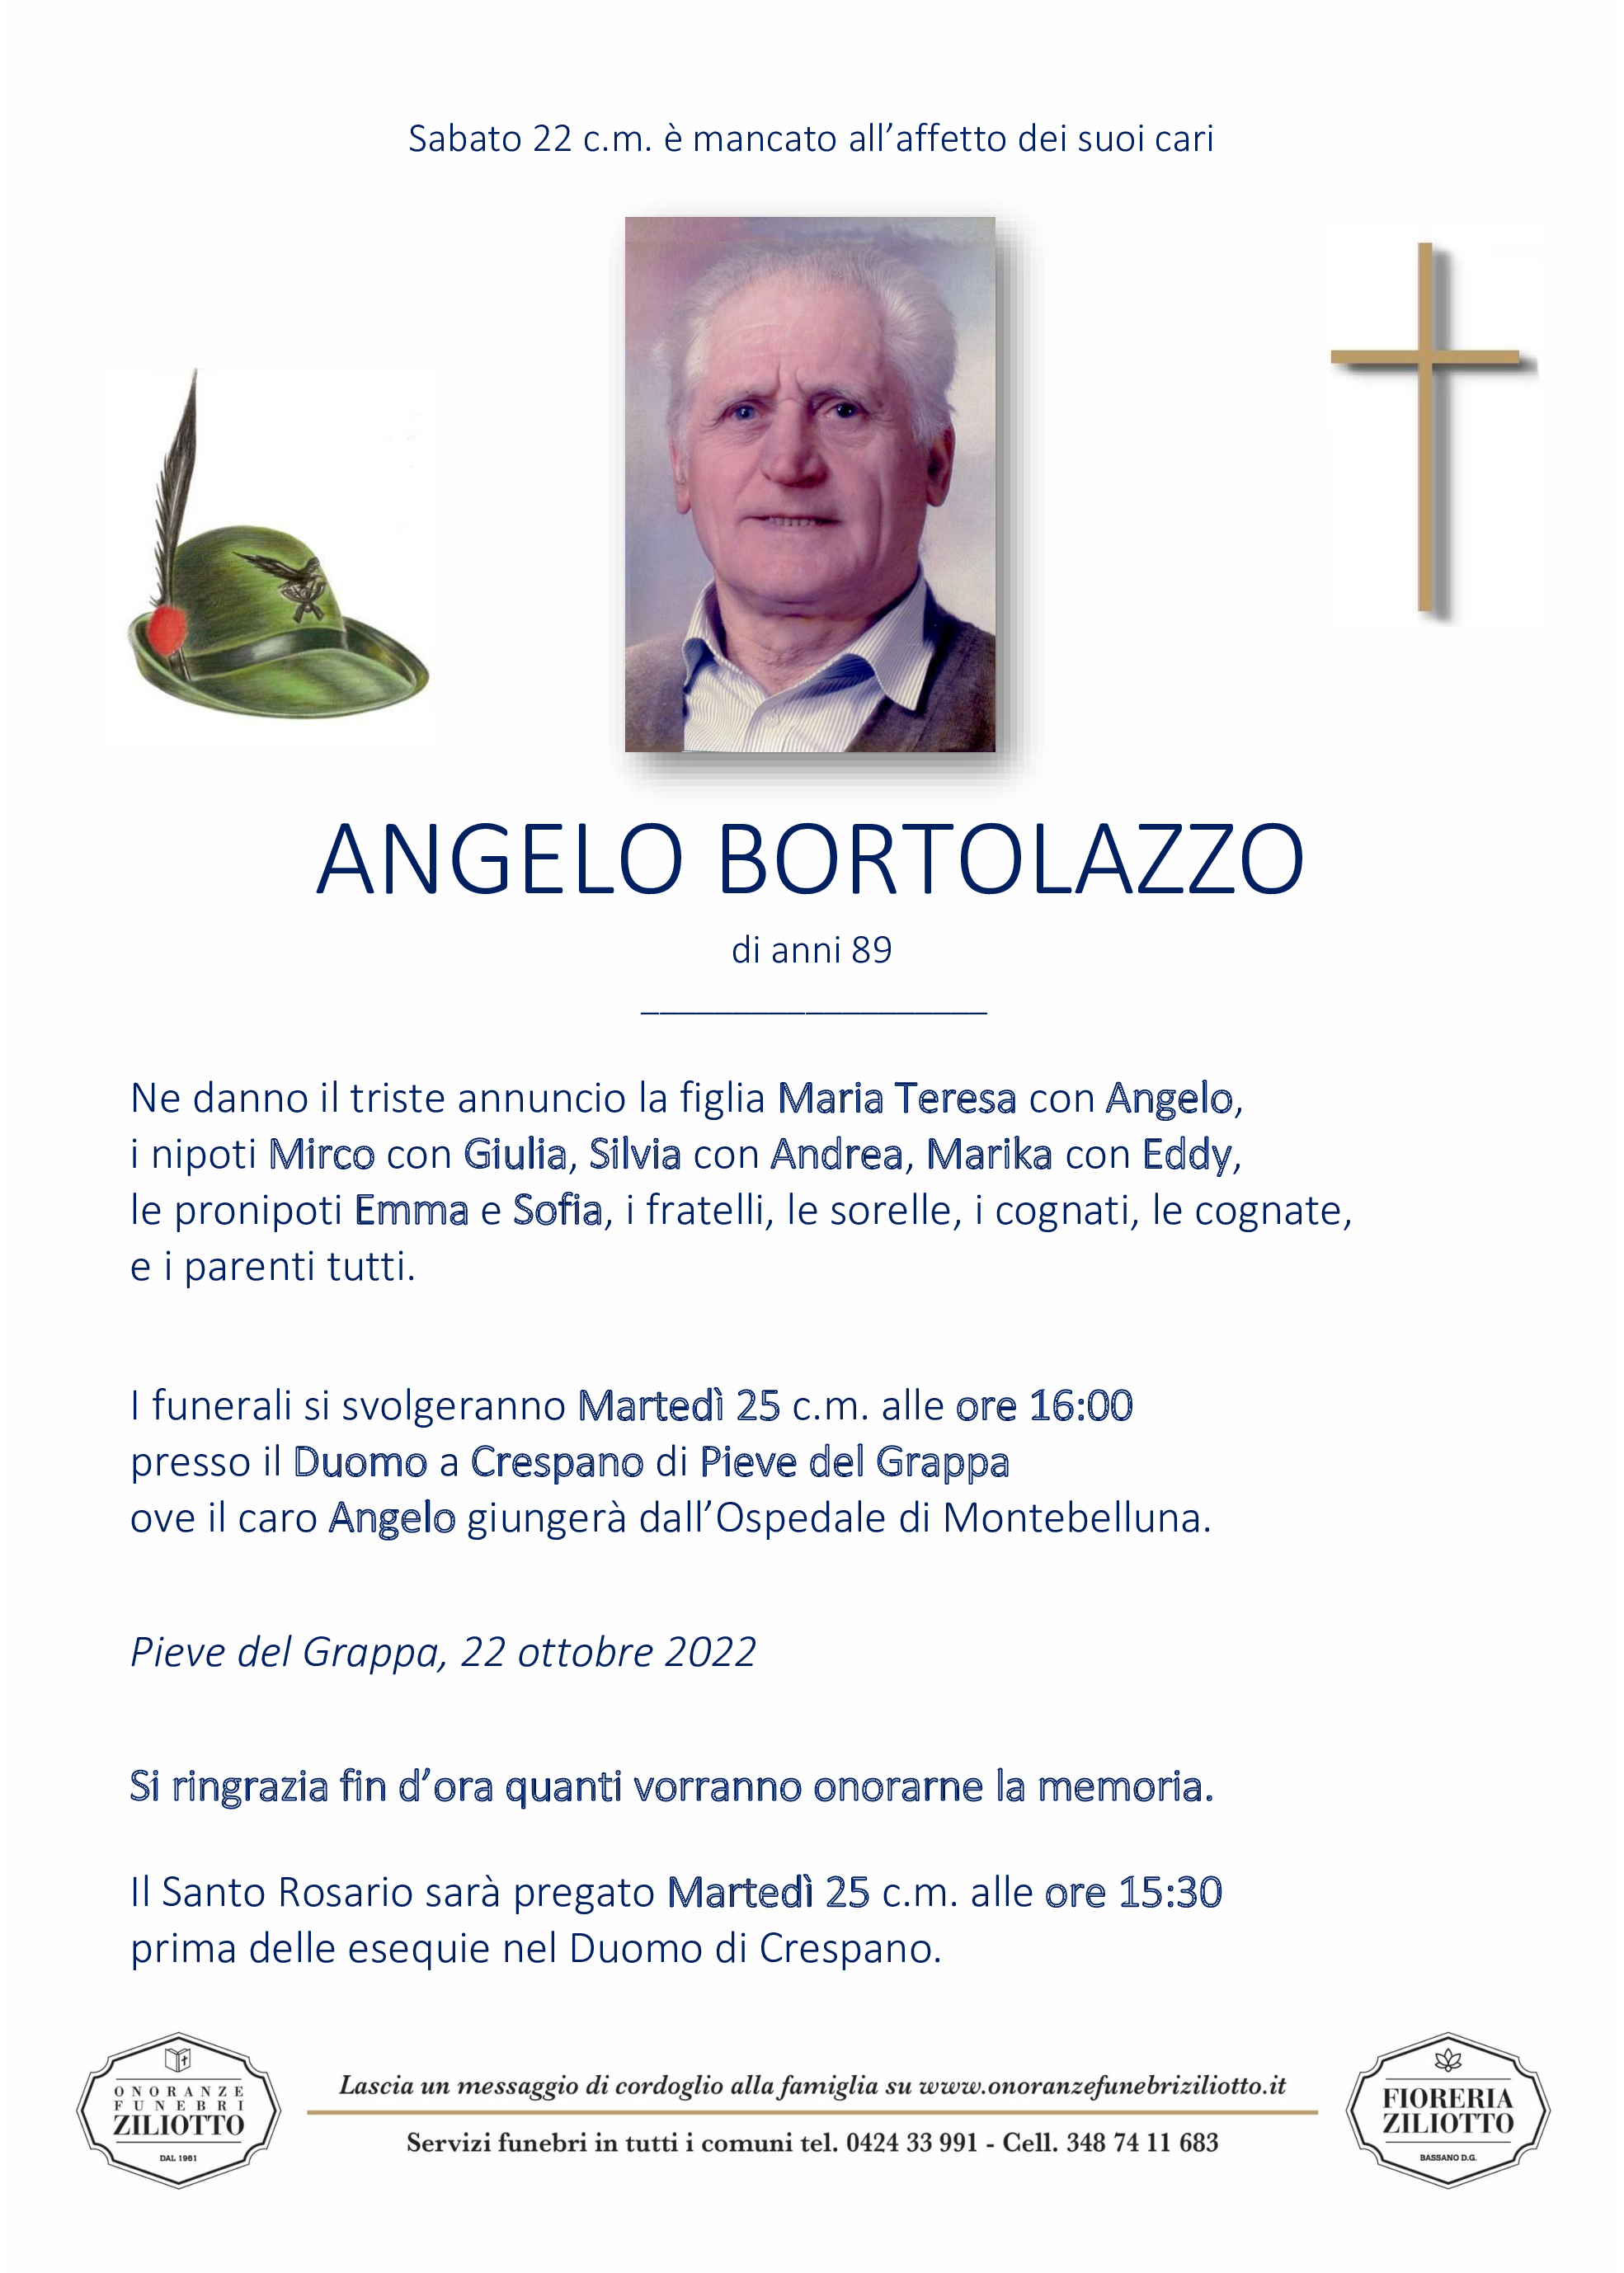 Angelo Bortolazzo - 89 anni - Crespano di Pieve del Grappa